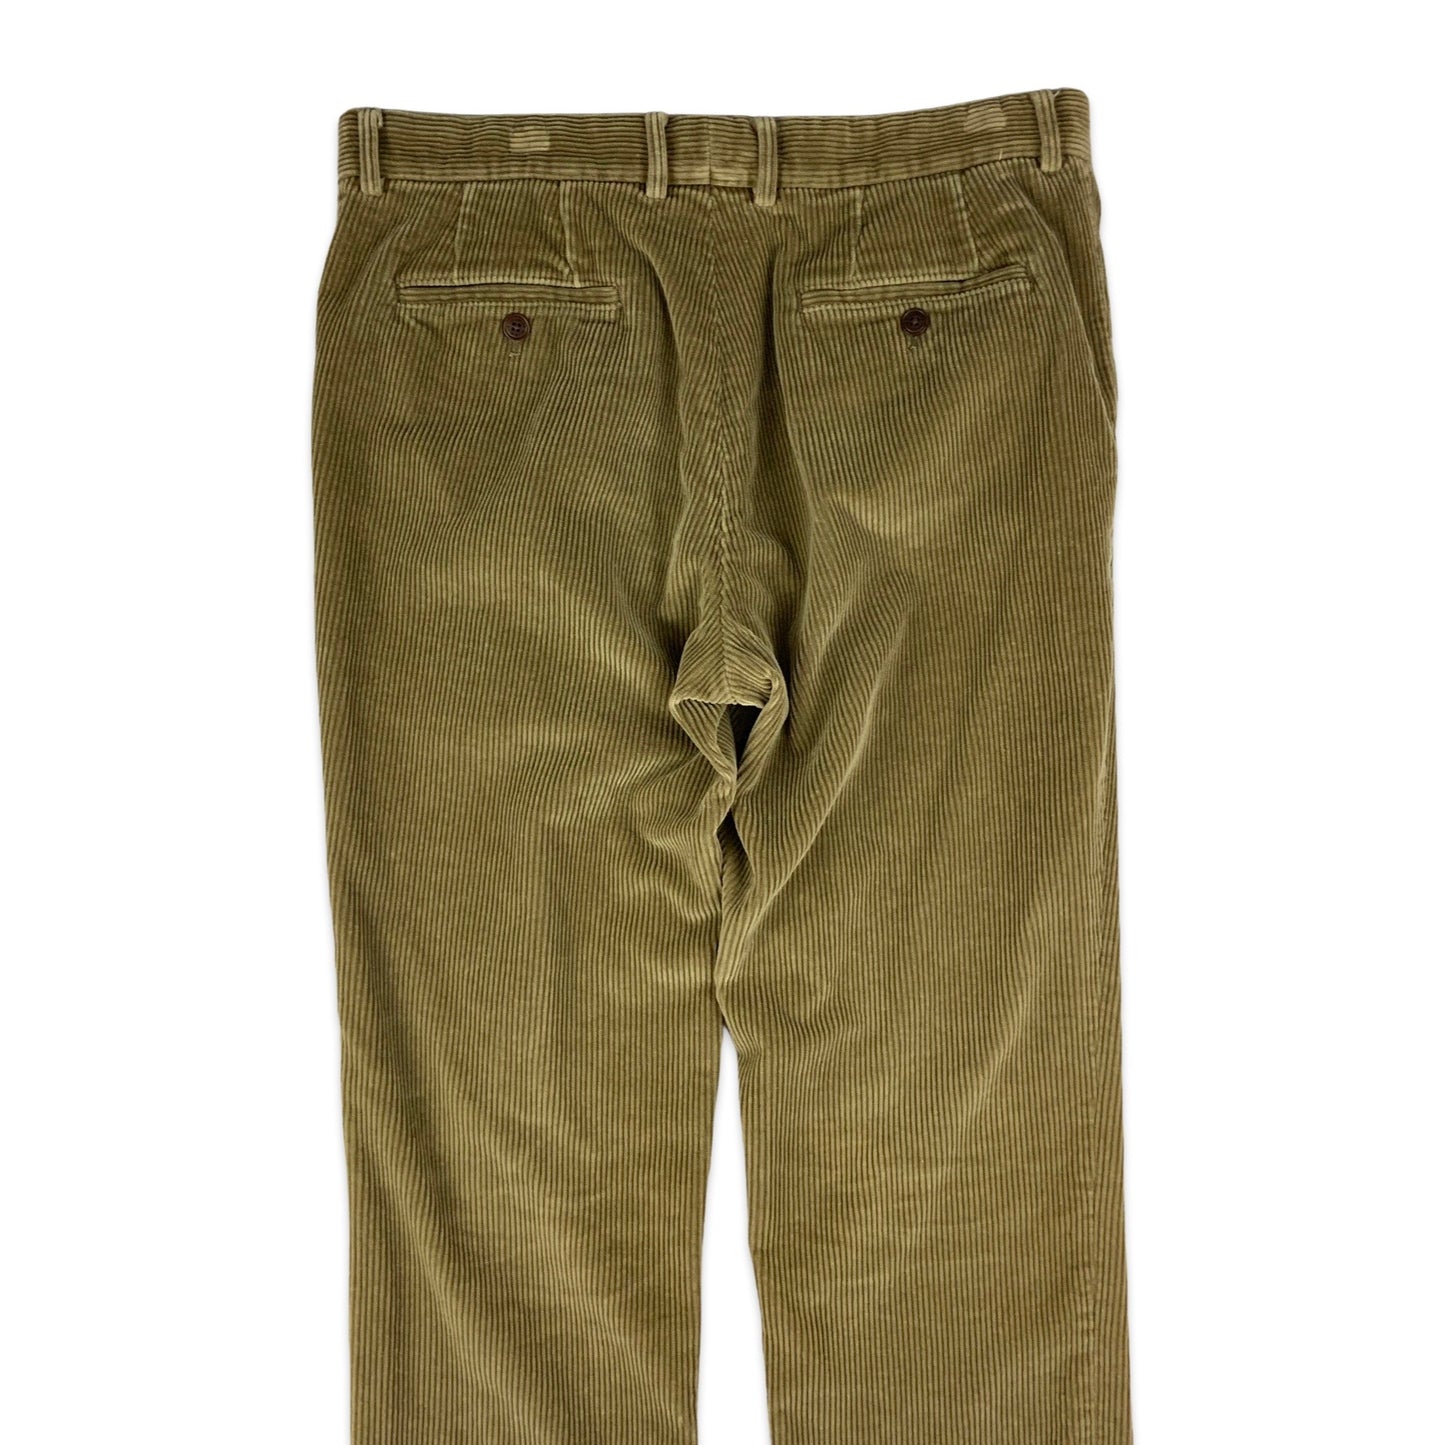 Brown Corduroy Trousers 35W 30L